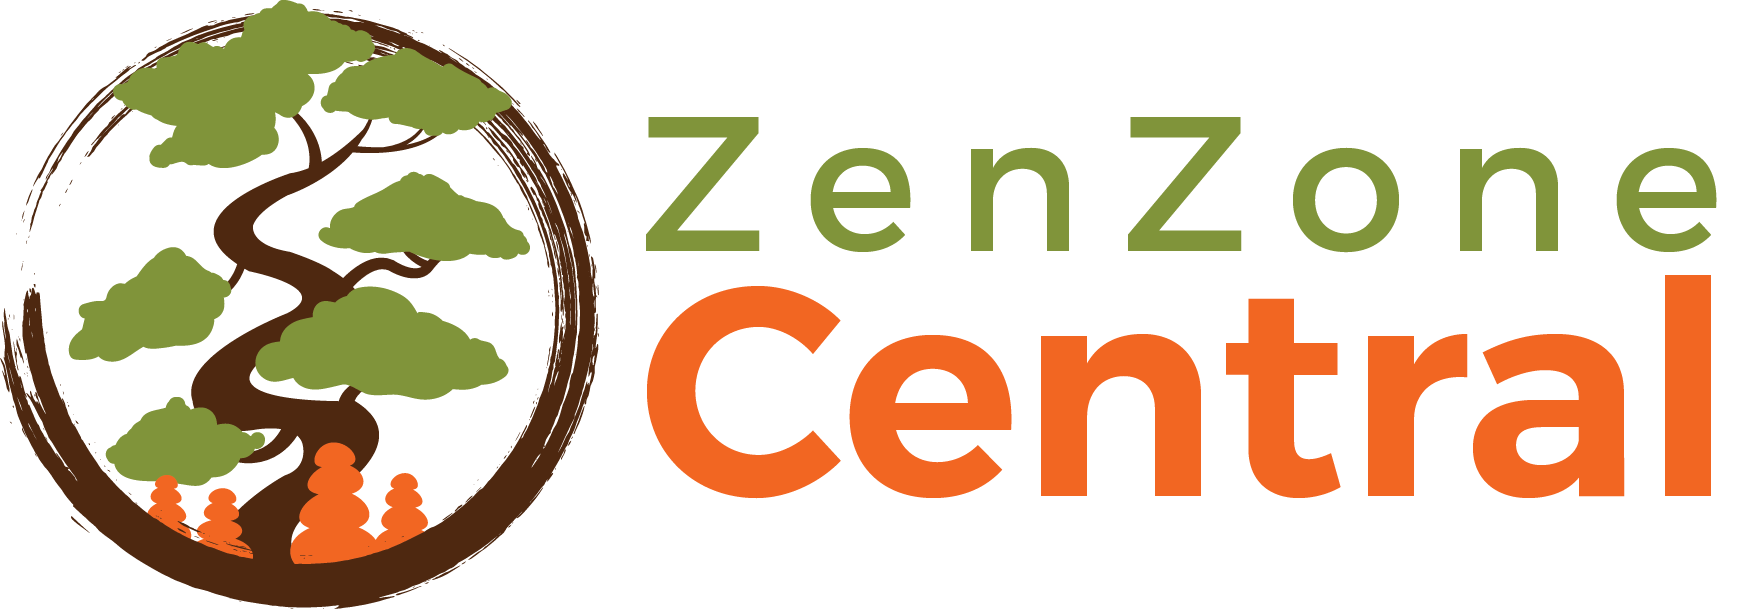 ZenZone Central